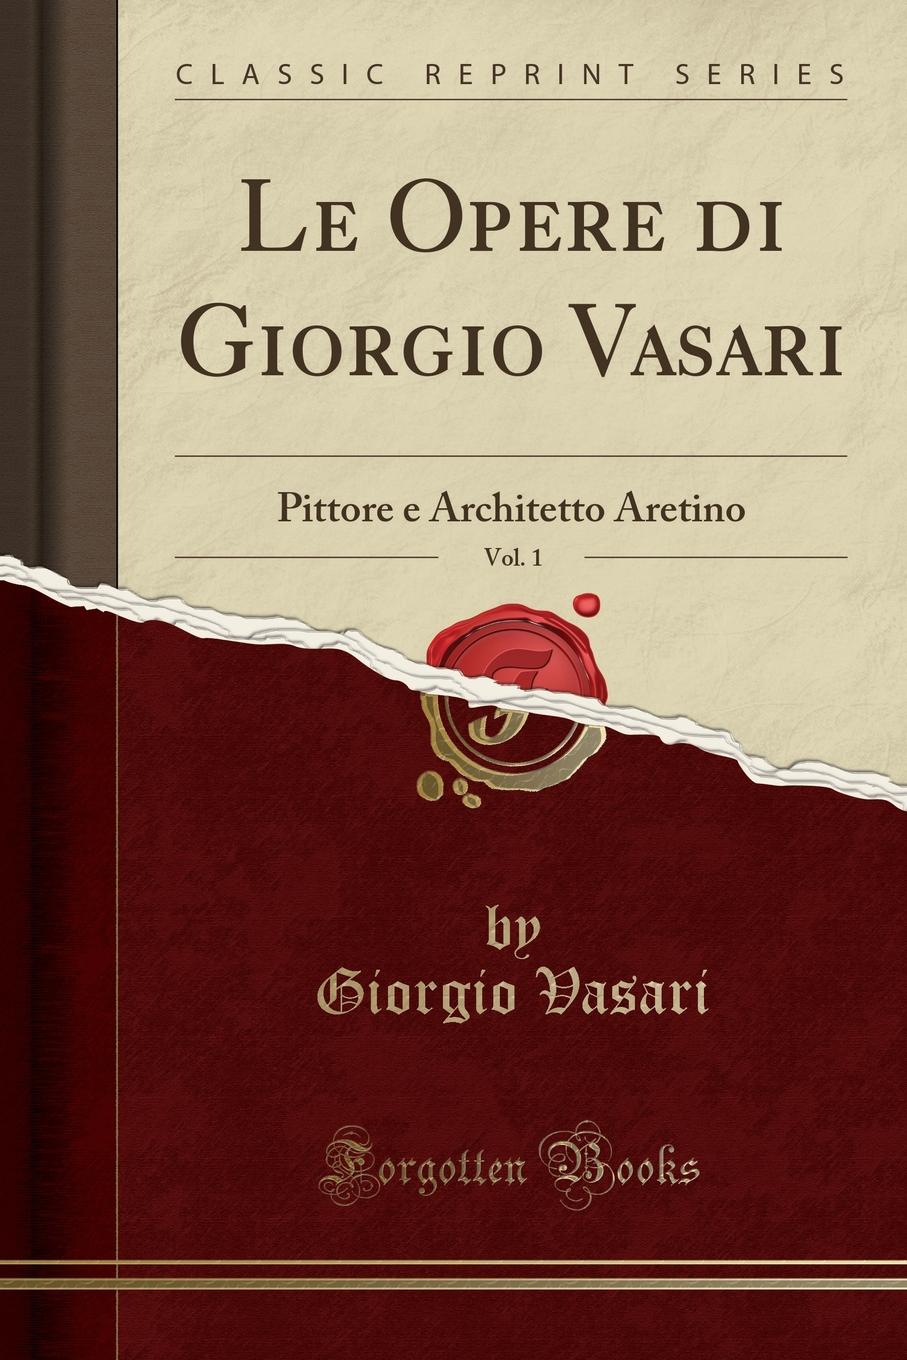 Le Opere di Giorgio Vasari, Vol. 1. Pittore e Architetto Aretino (Classic Reprint)